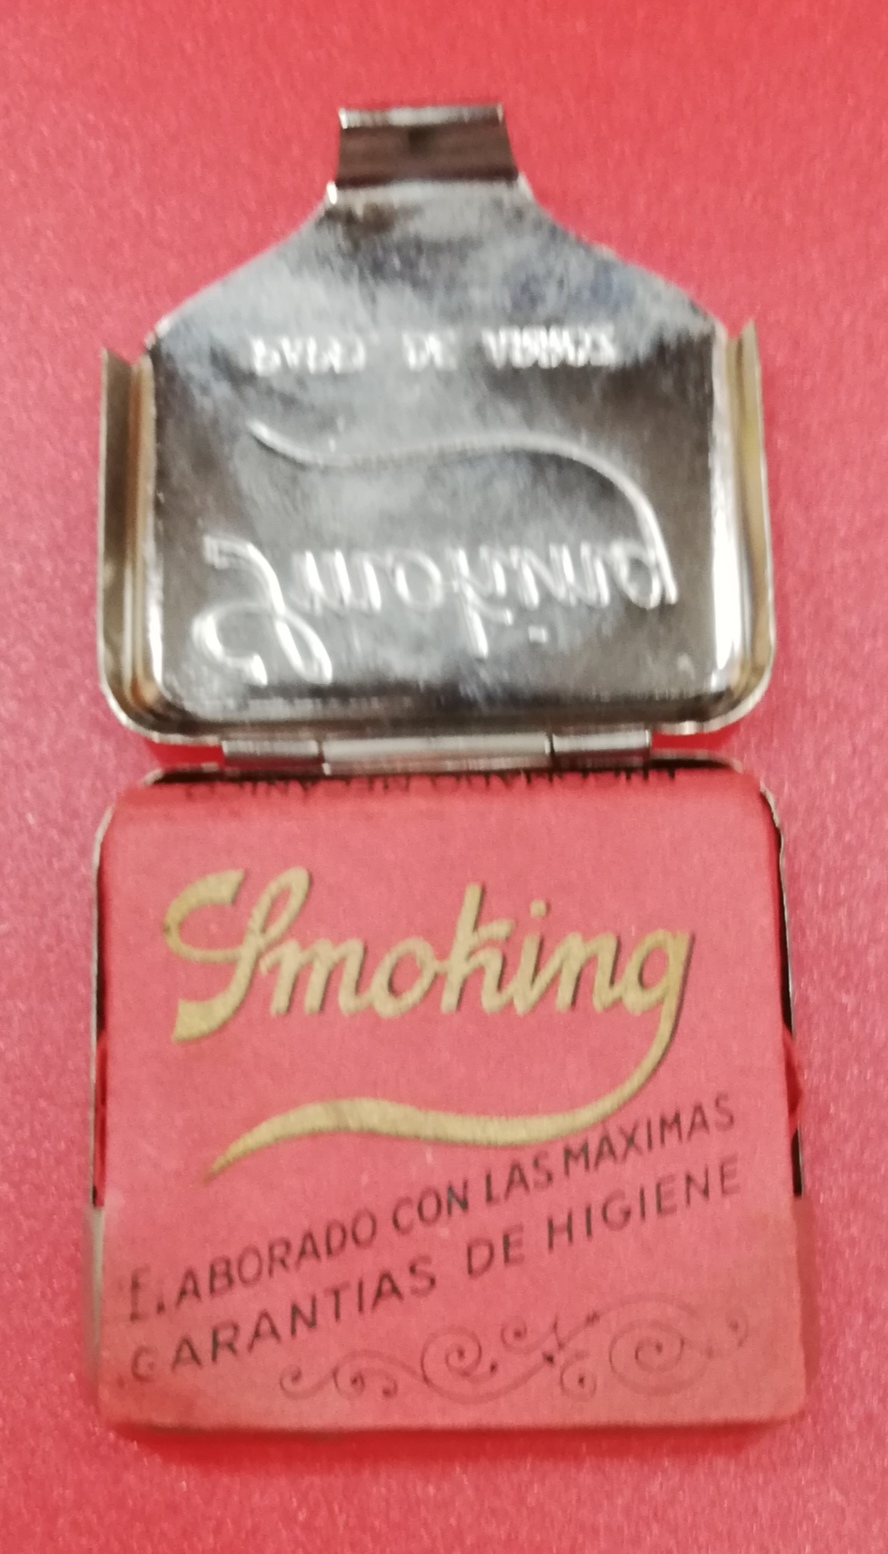 Antigua caja metálica Smoking (papel de arroz para fumadores)